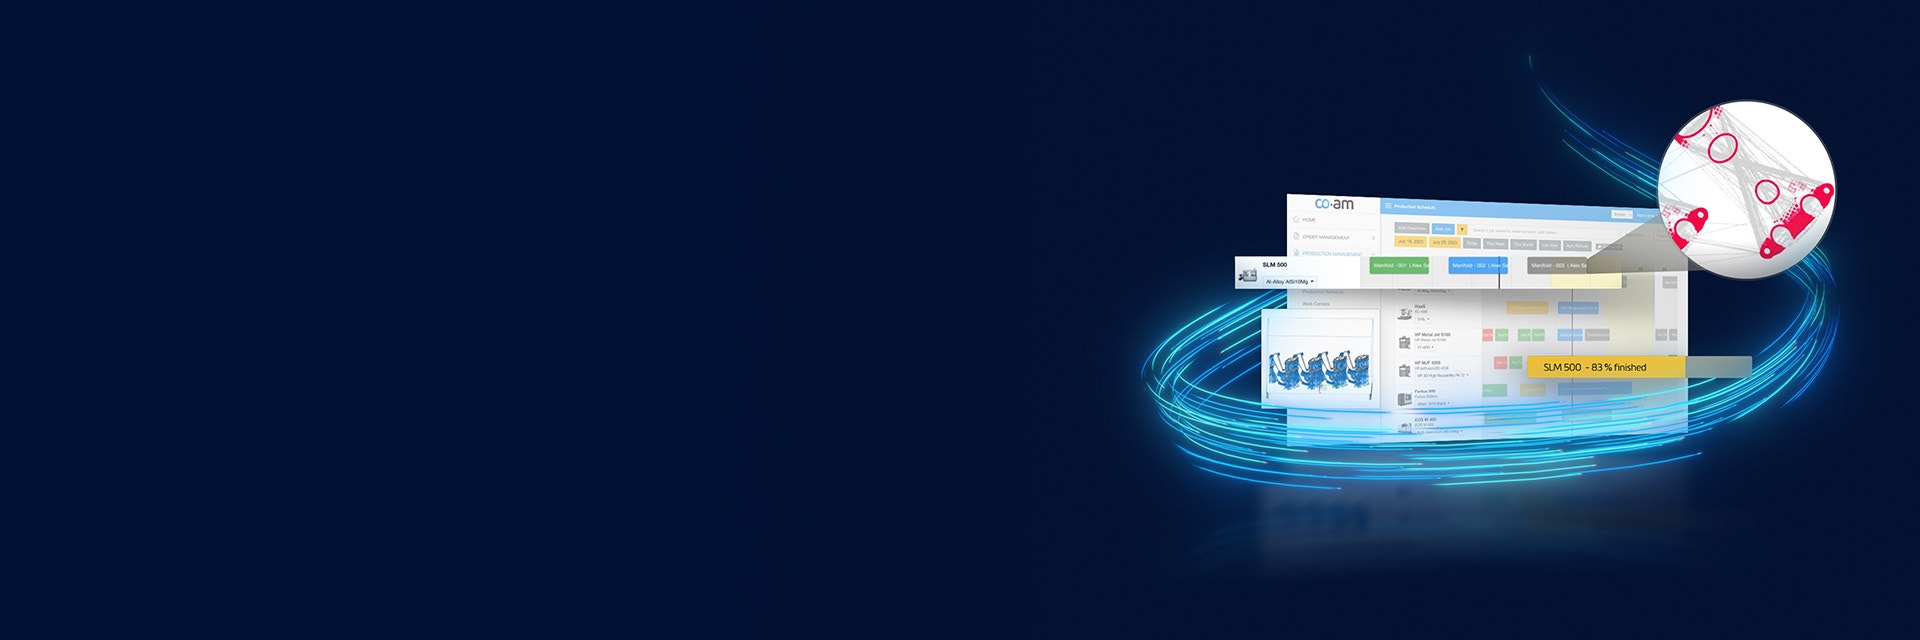 다양한 필드가 튀어나오고 네온 블루 선이 원을 그리는 CO-AM 소프트웨어가 표시된 화면